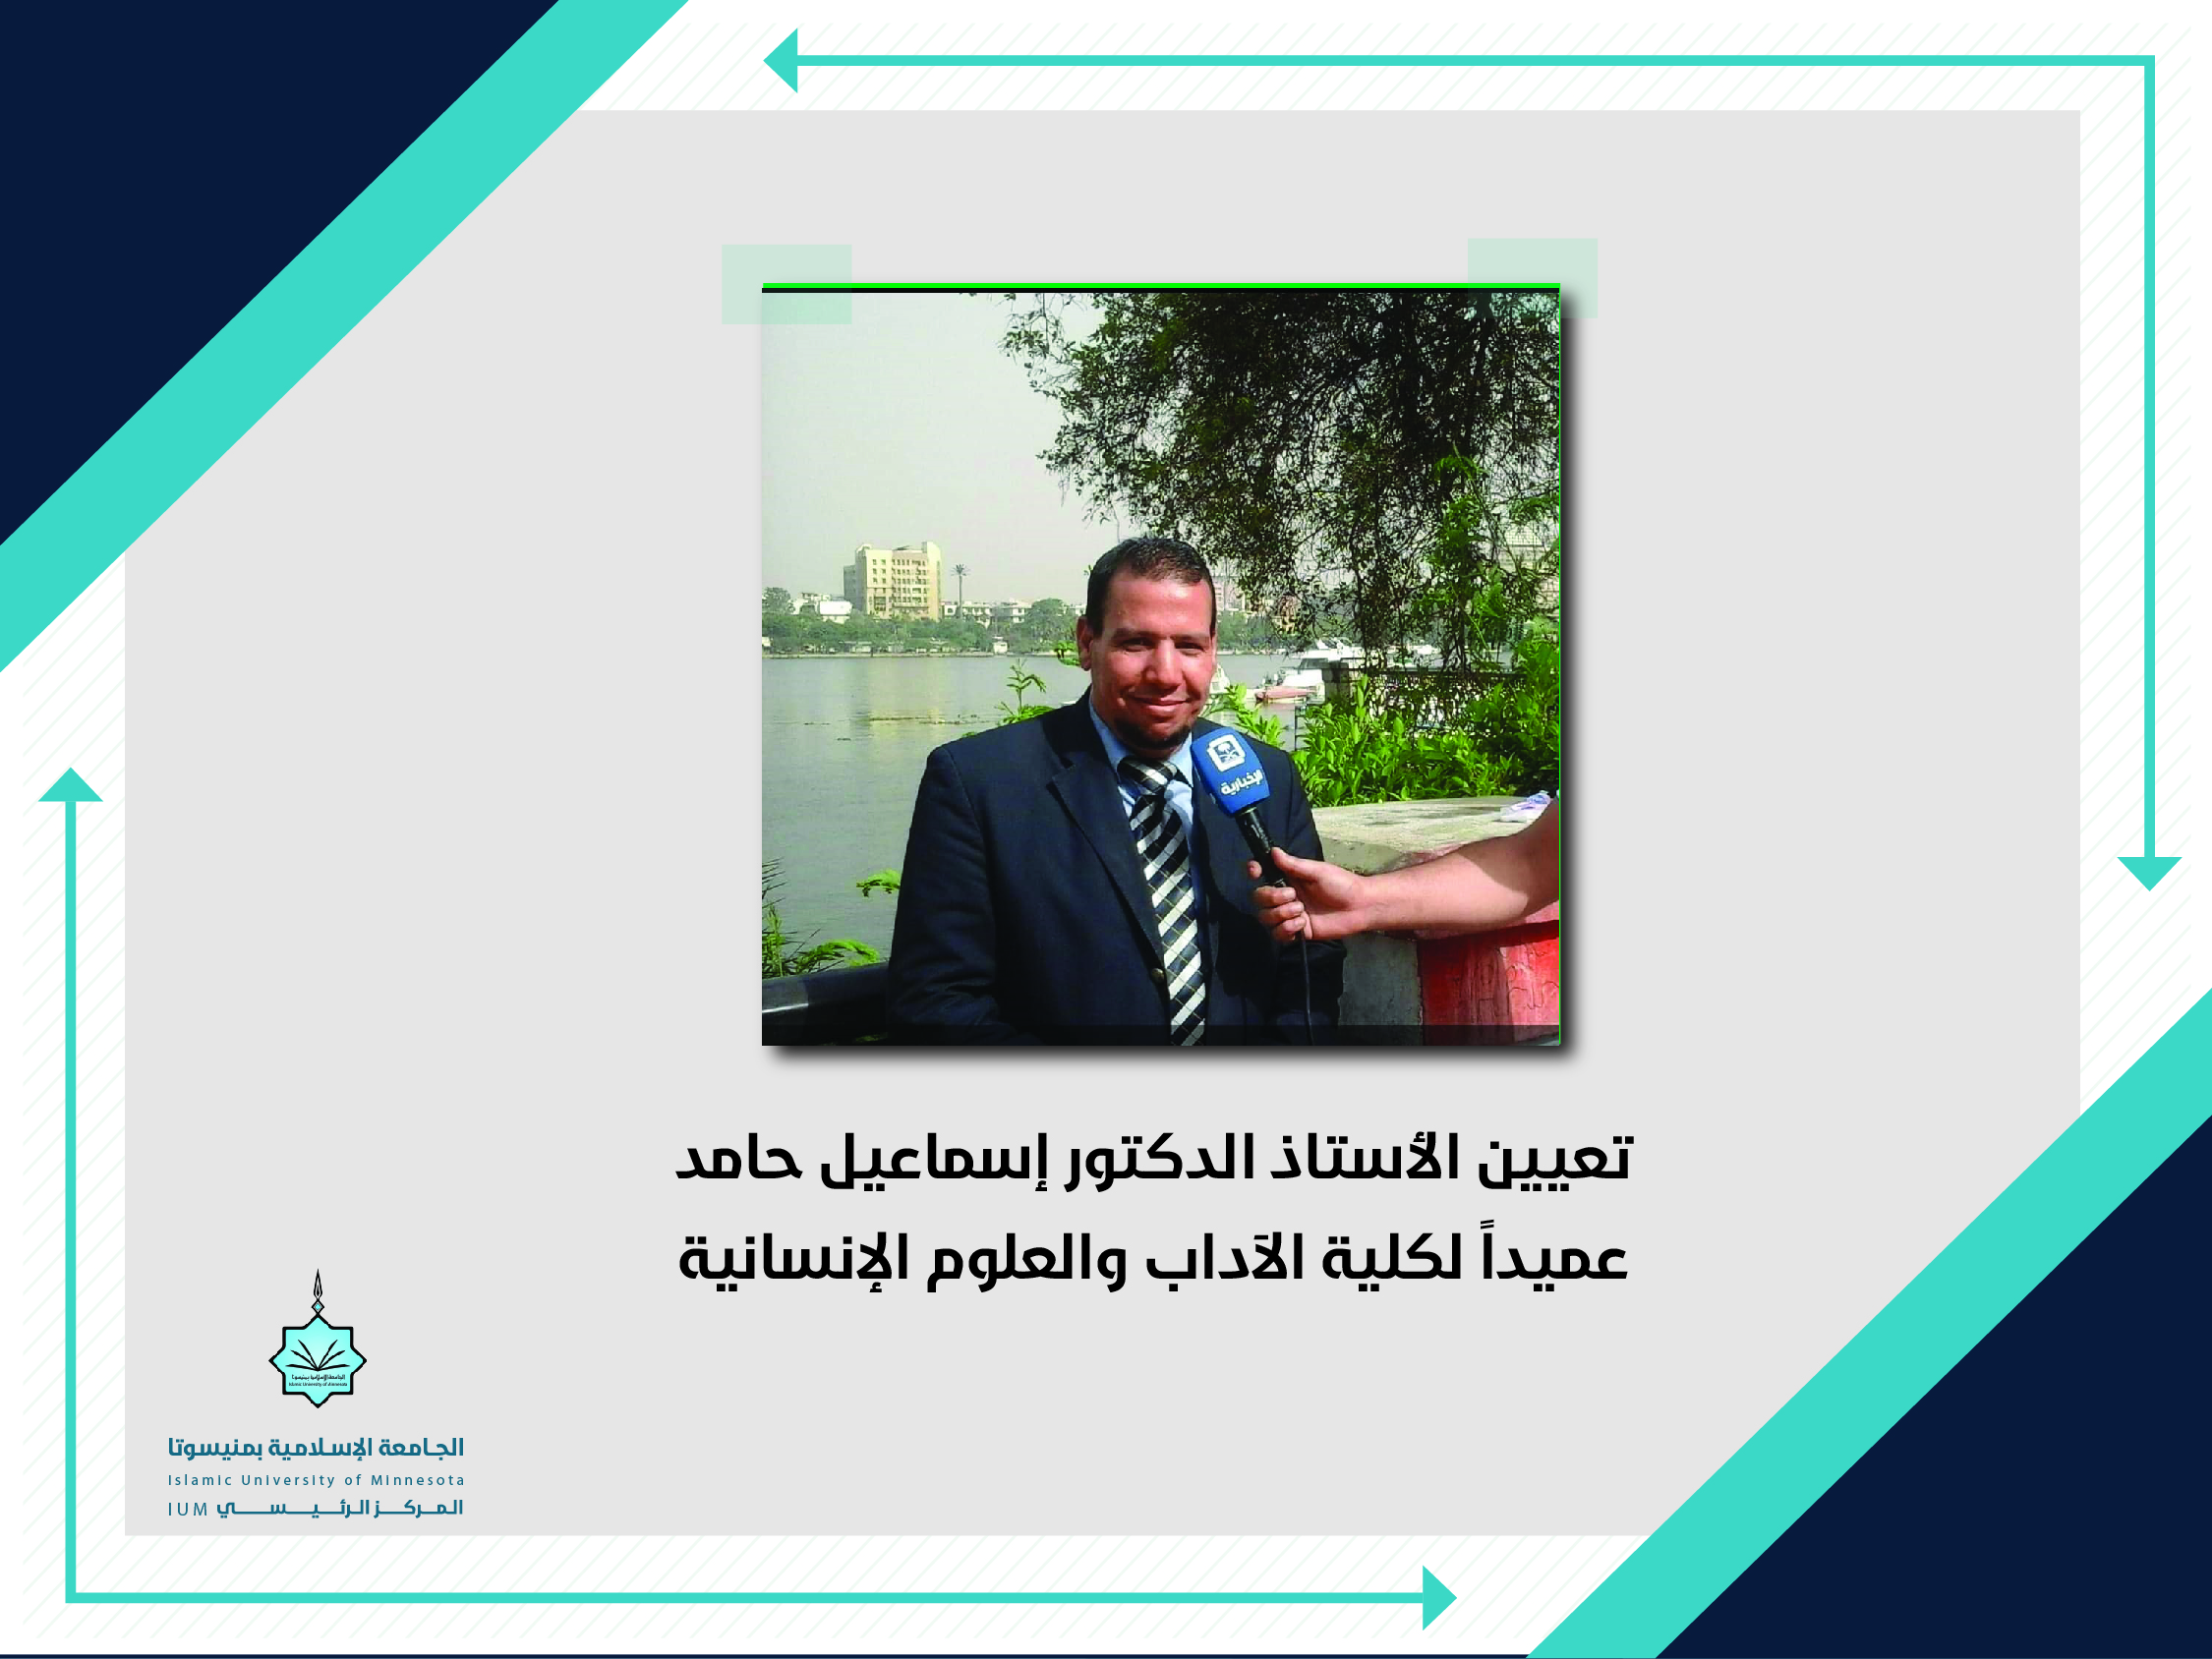 تعيين الأستاذ الدكتور إسماعيل حامد عميدا لكلية الآداب والعلوم الإنسانية